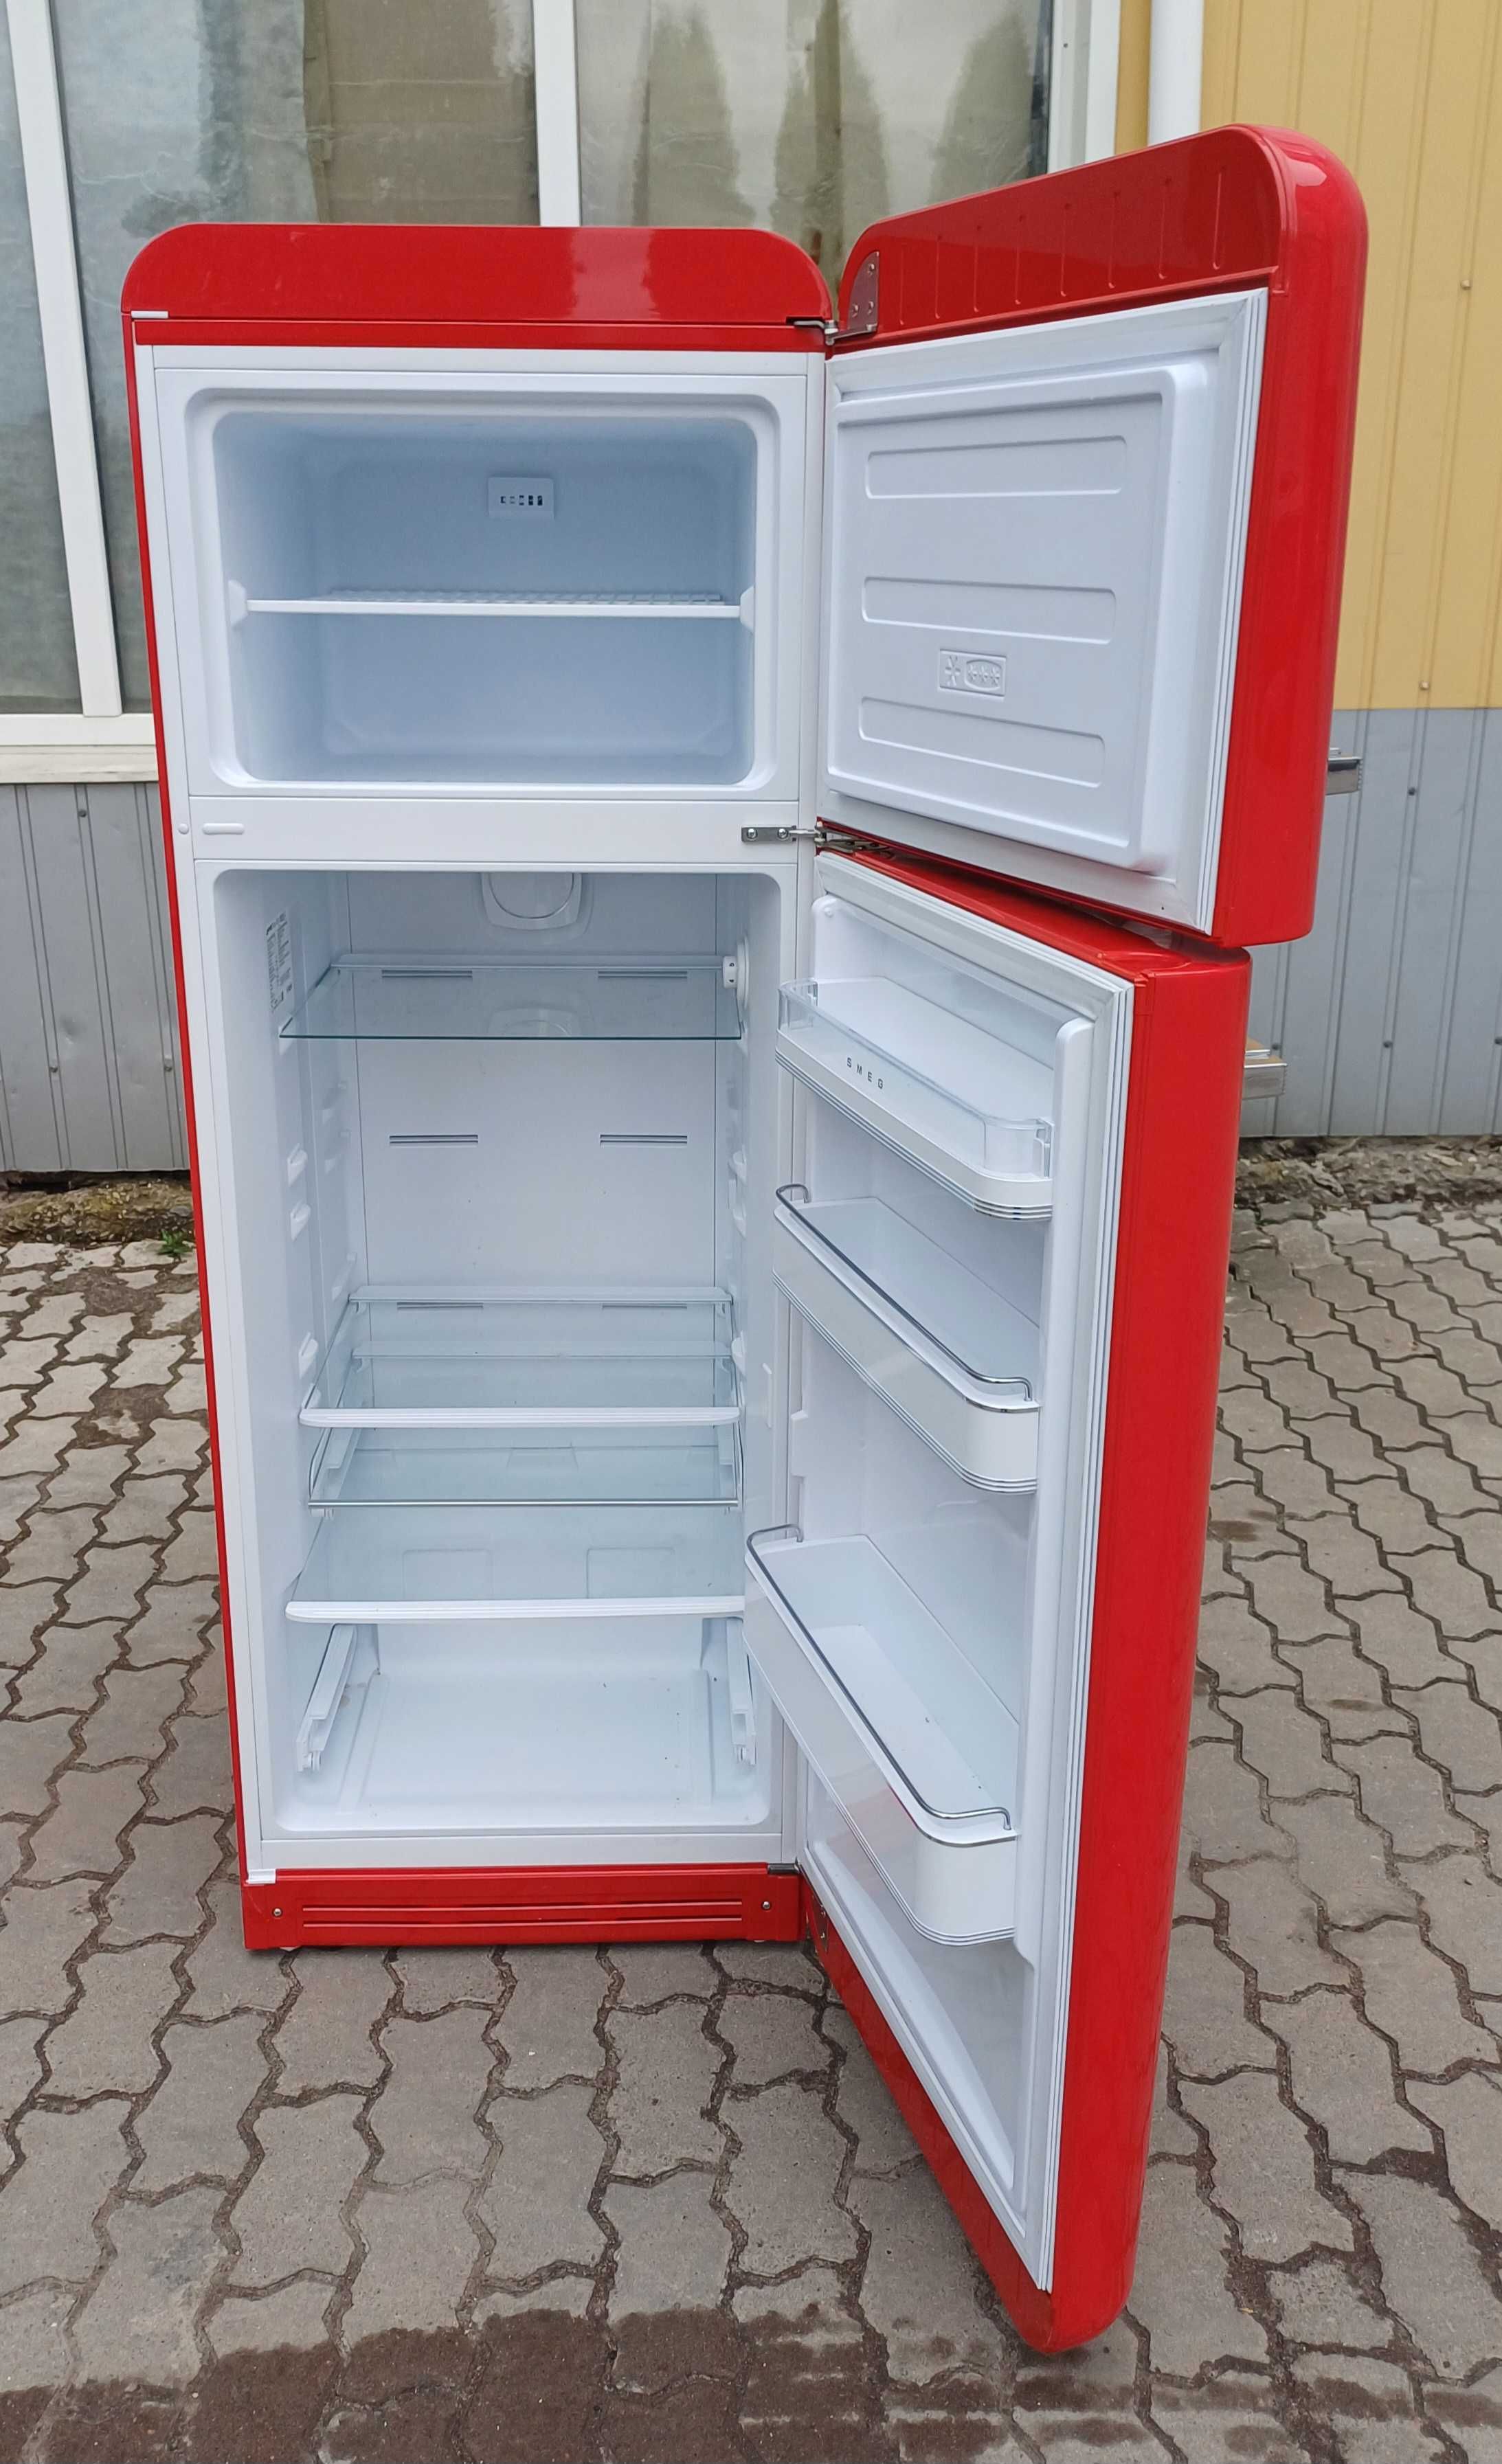 Холодильник Смег Smeg FAB30RRD5 170см А+++ червоний вживаний